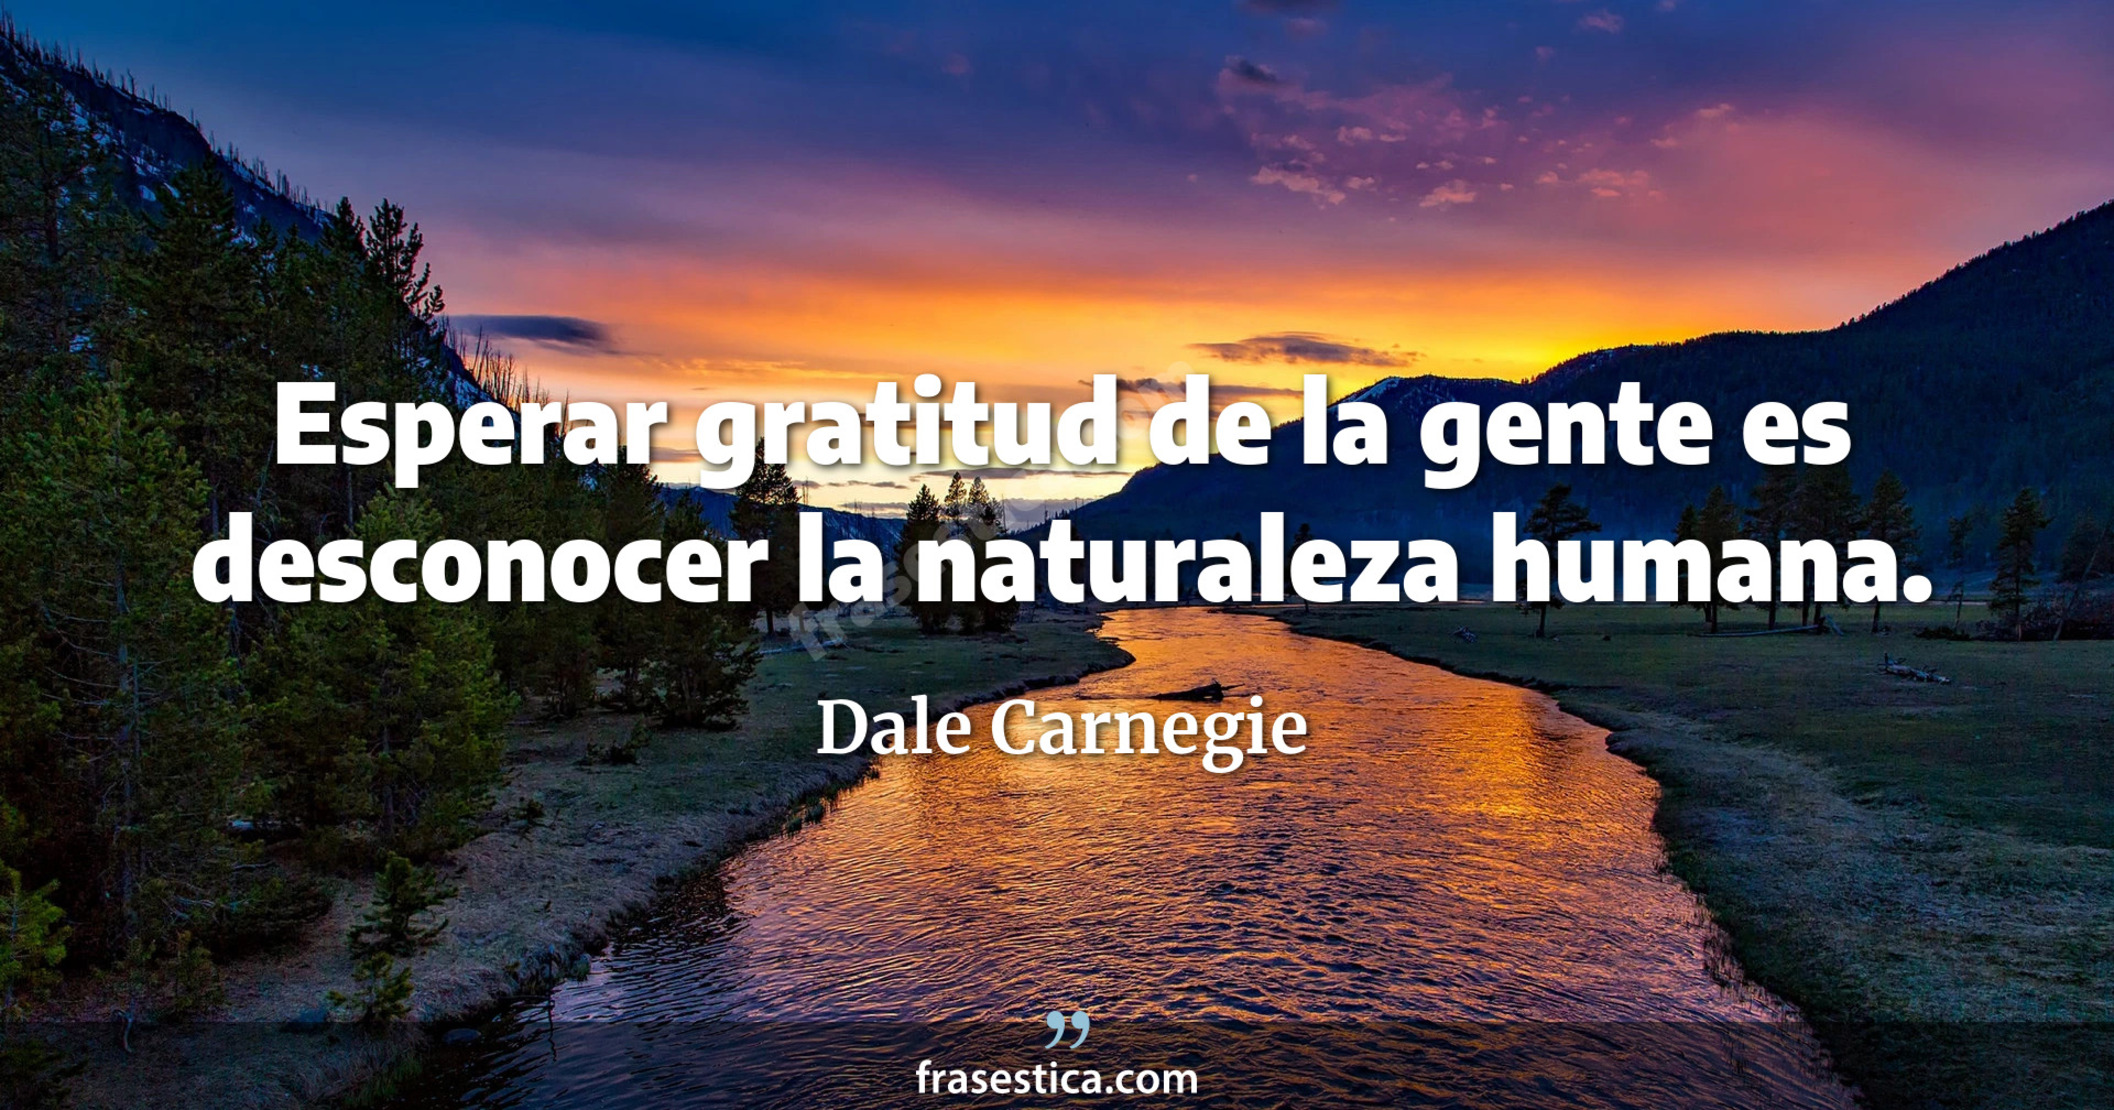 Esperar gratitud de la gente es desconocer la naturaleza humana. - Dale Carnegie